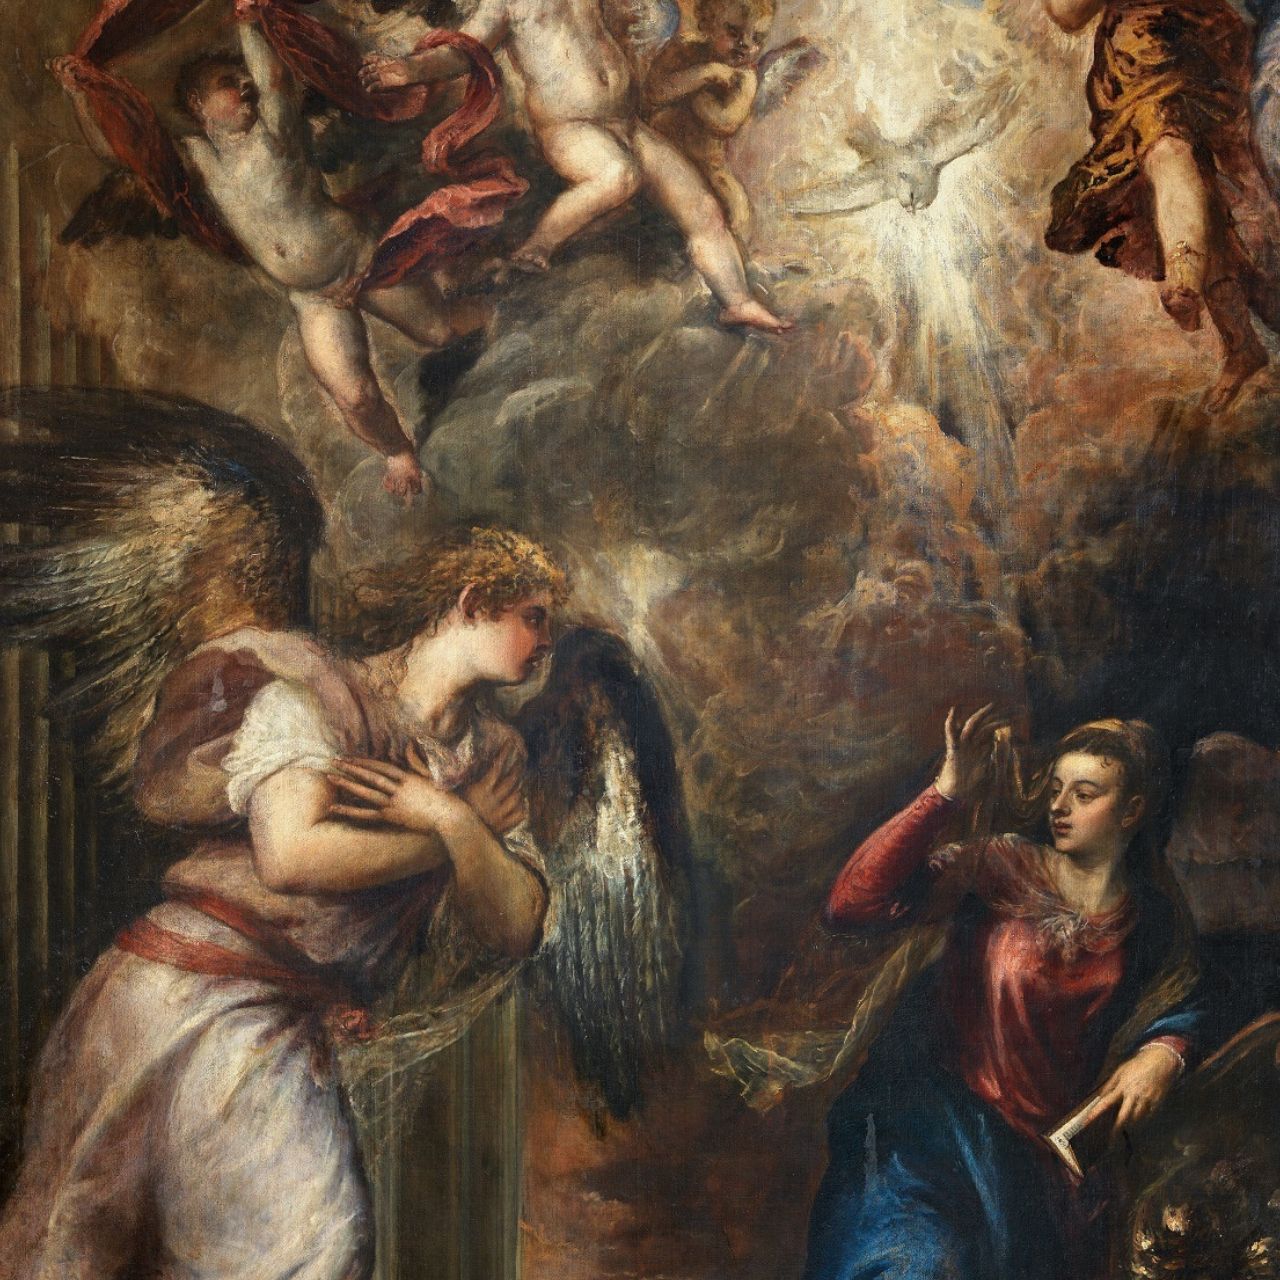 Fondazione CRC | Intesa Sanpaolo | I colori della fede a Venezia: Tiziano, Tintoretto, Veronese